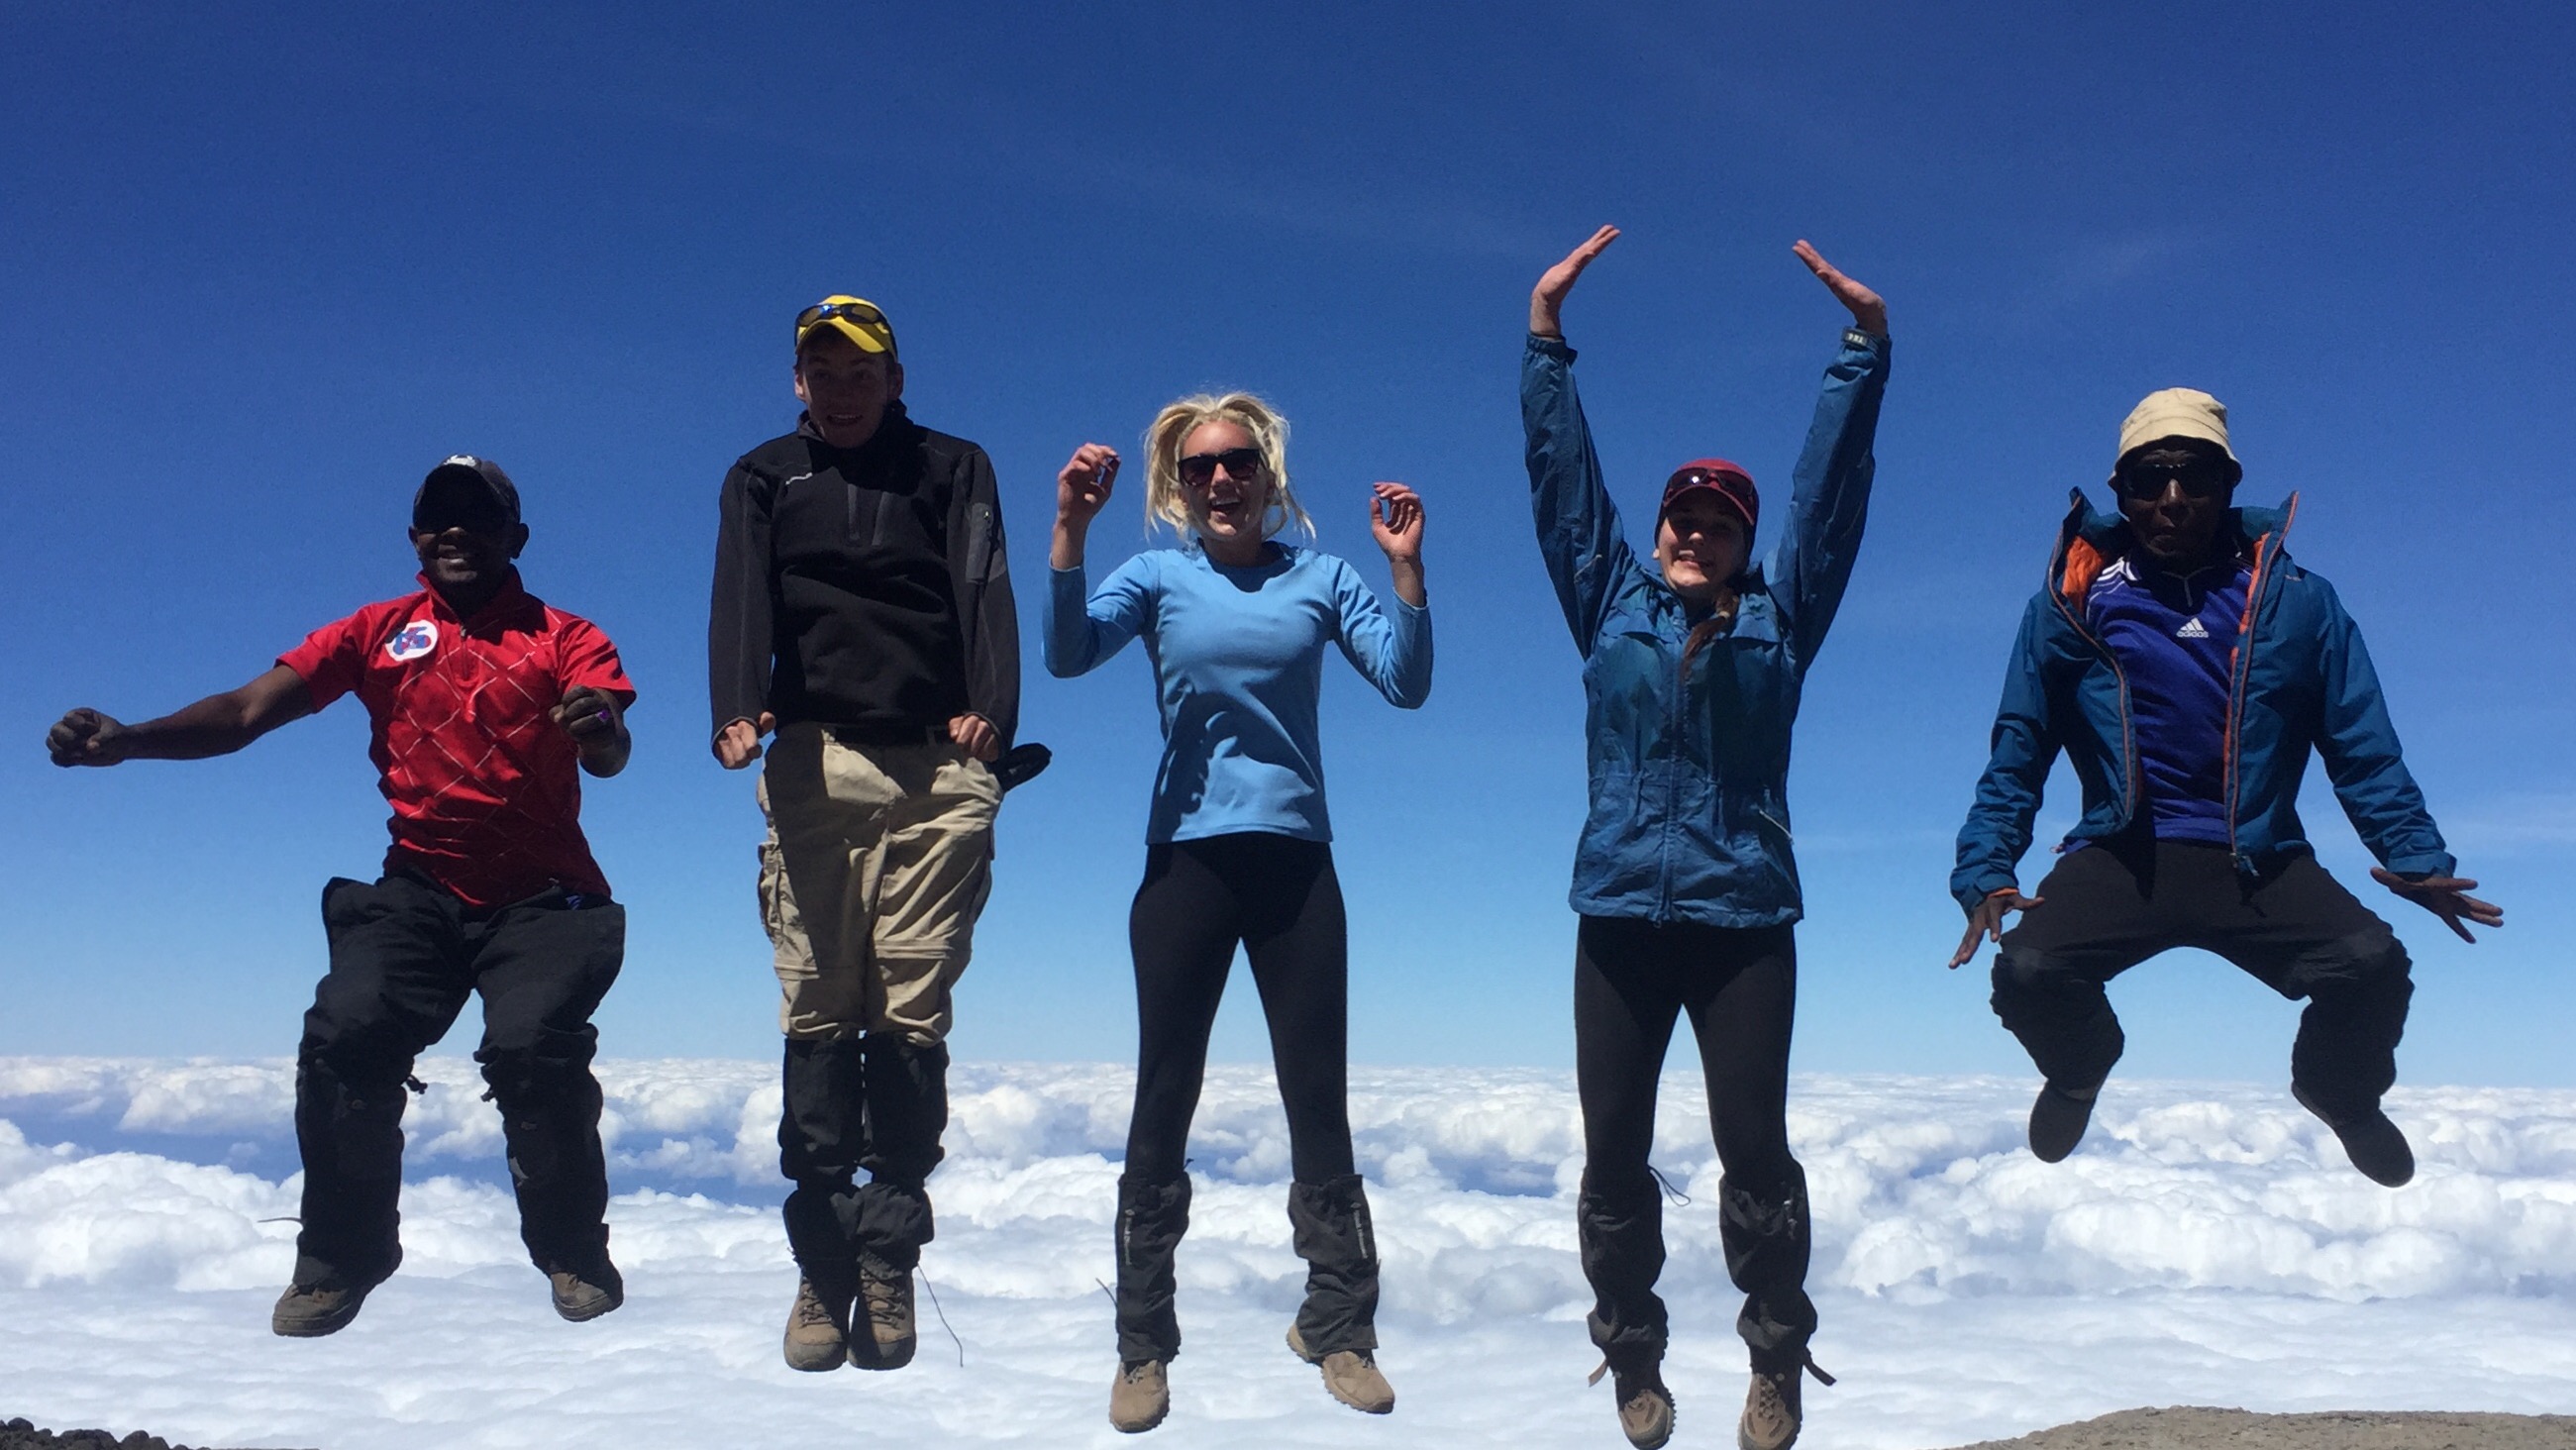 Climb Mountain Kilimanjaro & Visit Tanzania National Parks With No 